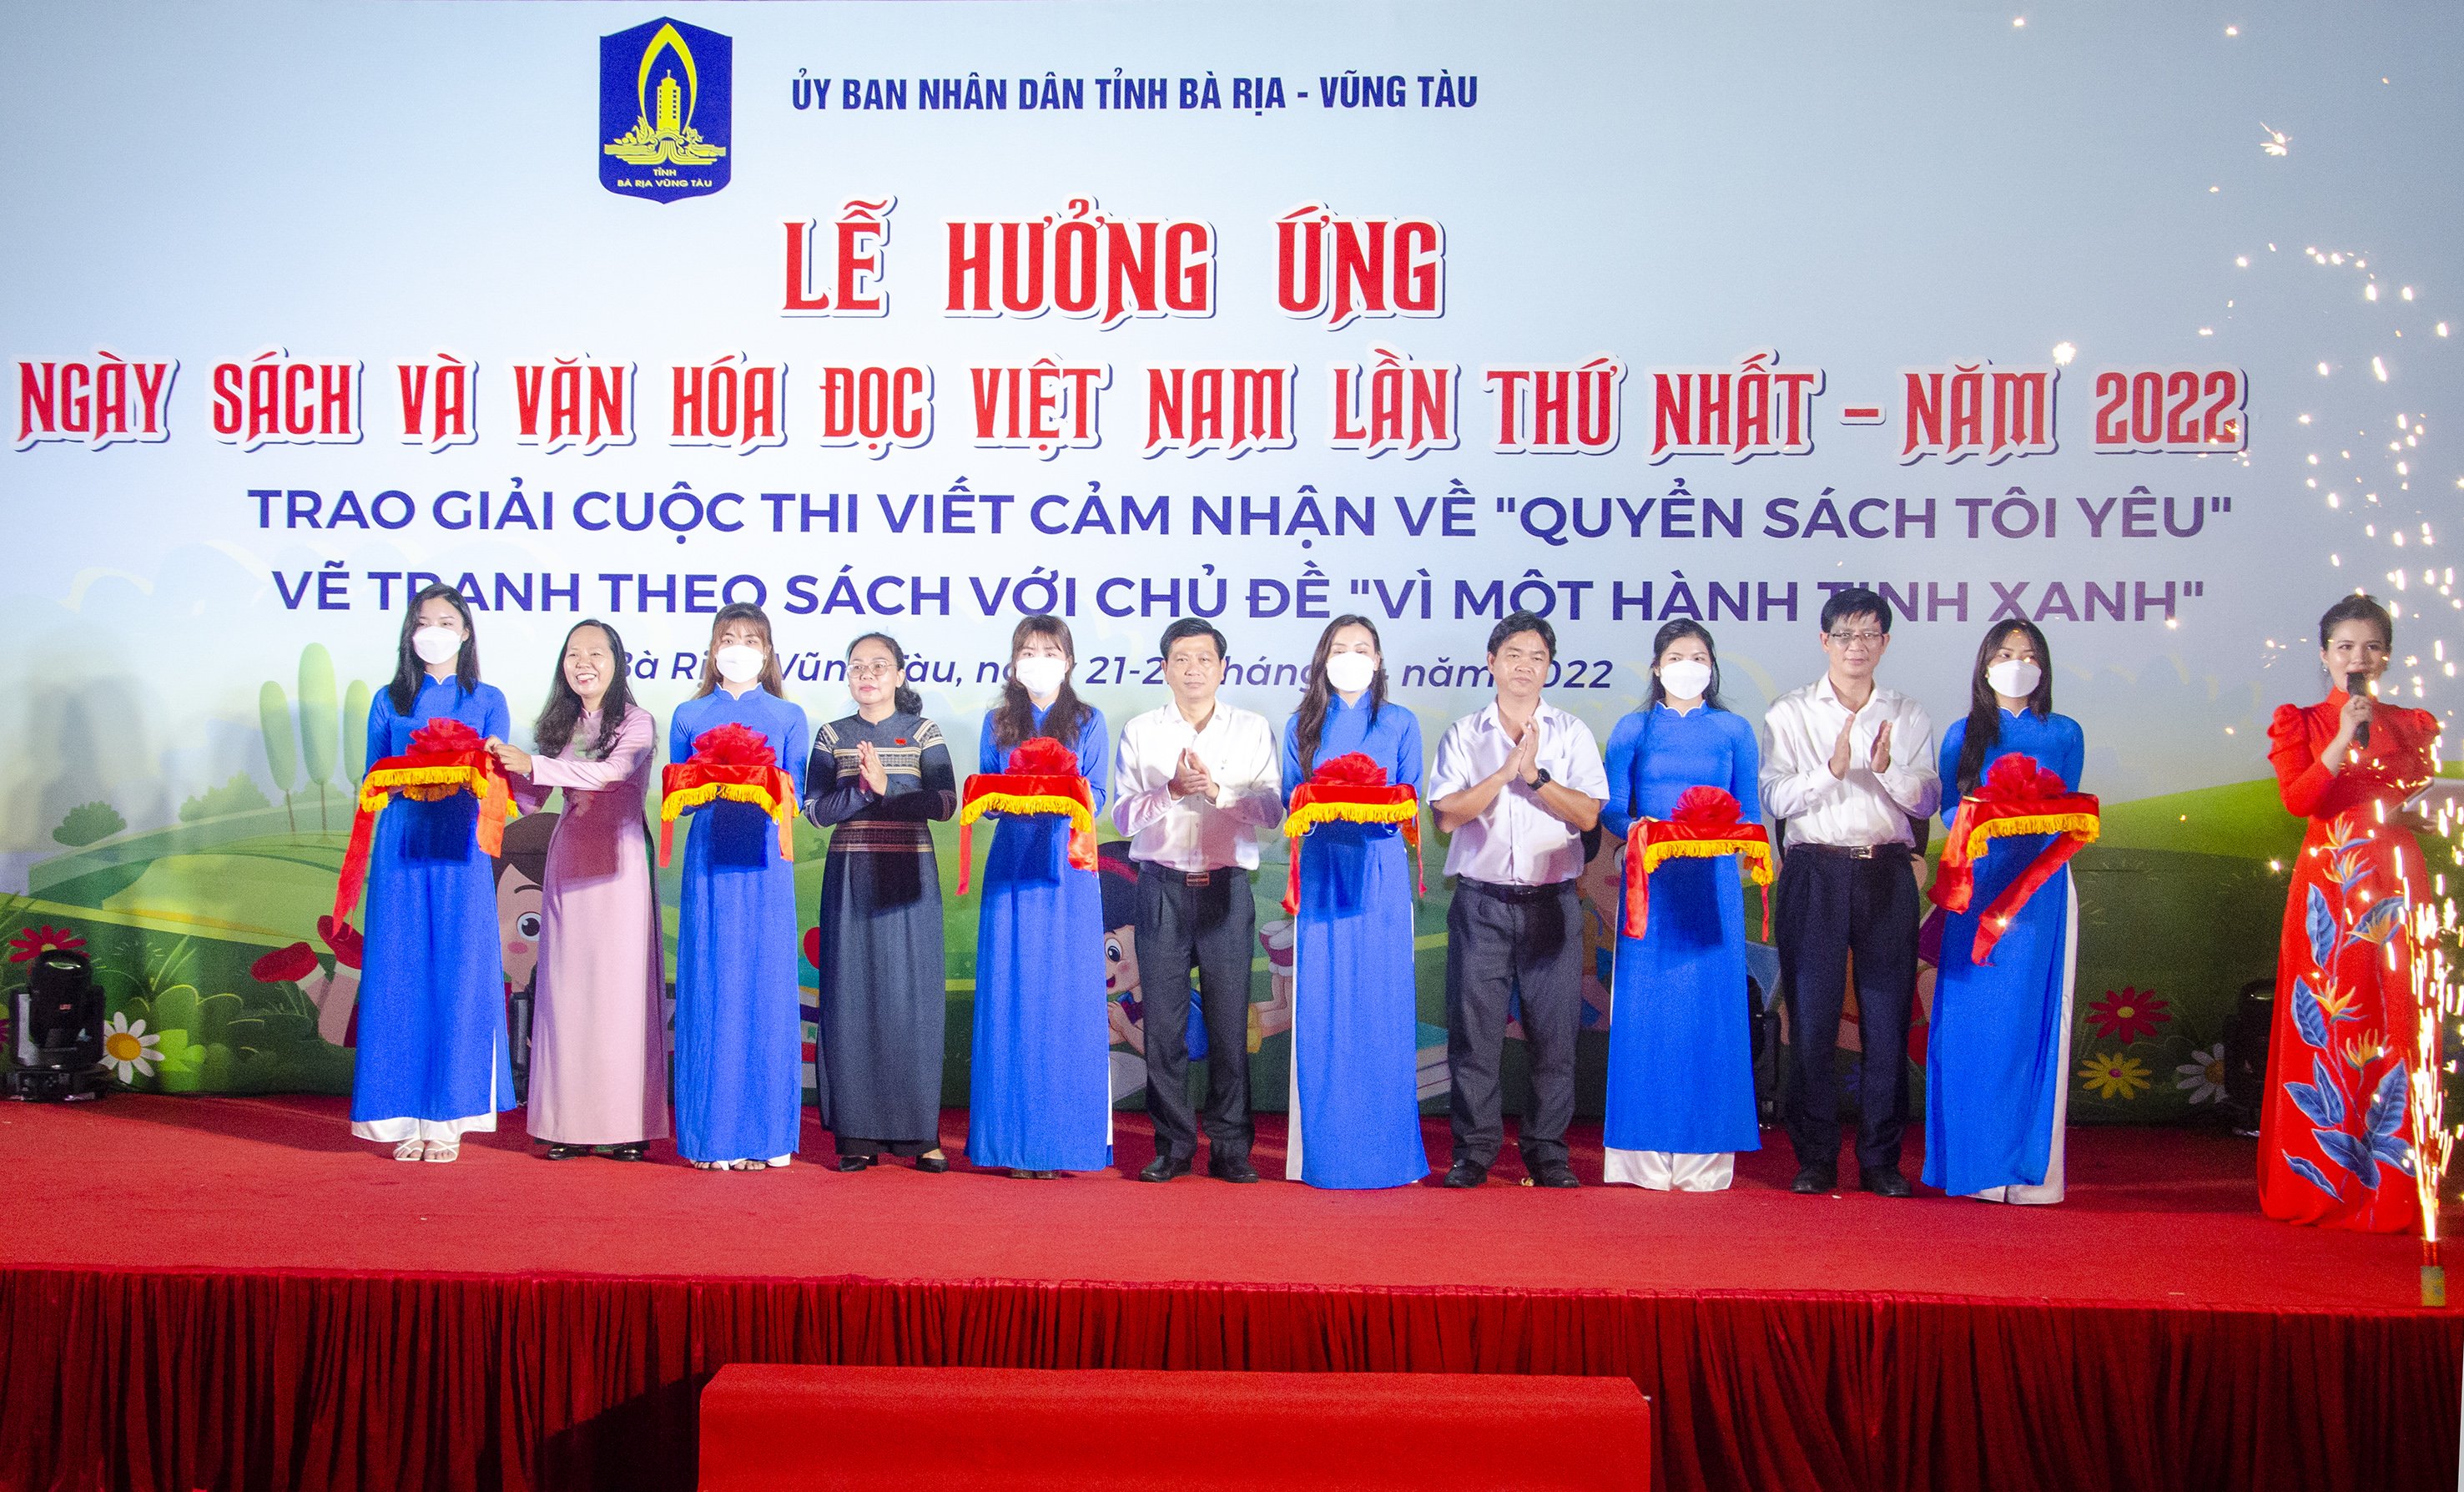 Các đại biểu thực hiện nghi thức cắt băng khai mạc Ngày sách và Văn hóa đọc Việt Nam tỉnh Bà Rịa - Vũng Tàu năm 2022.